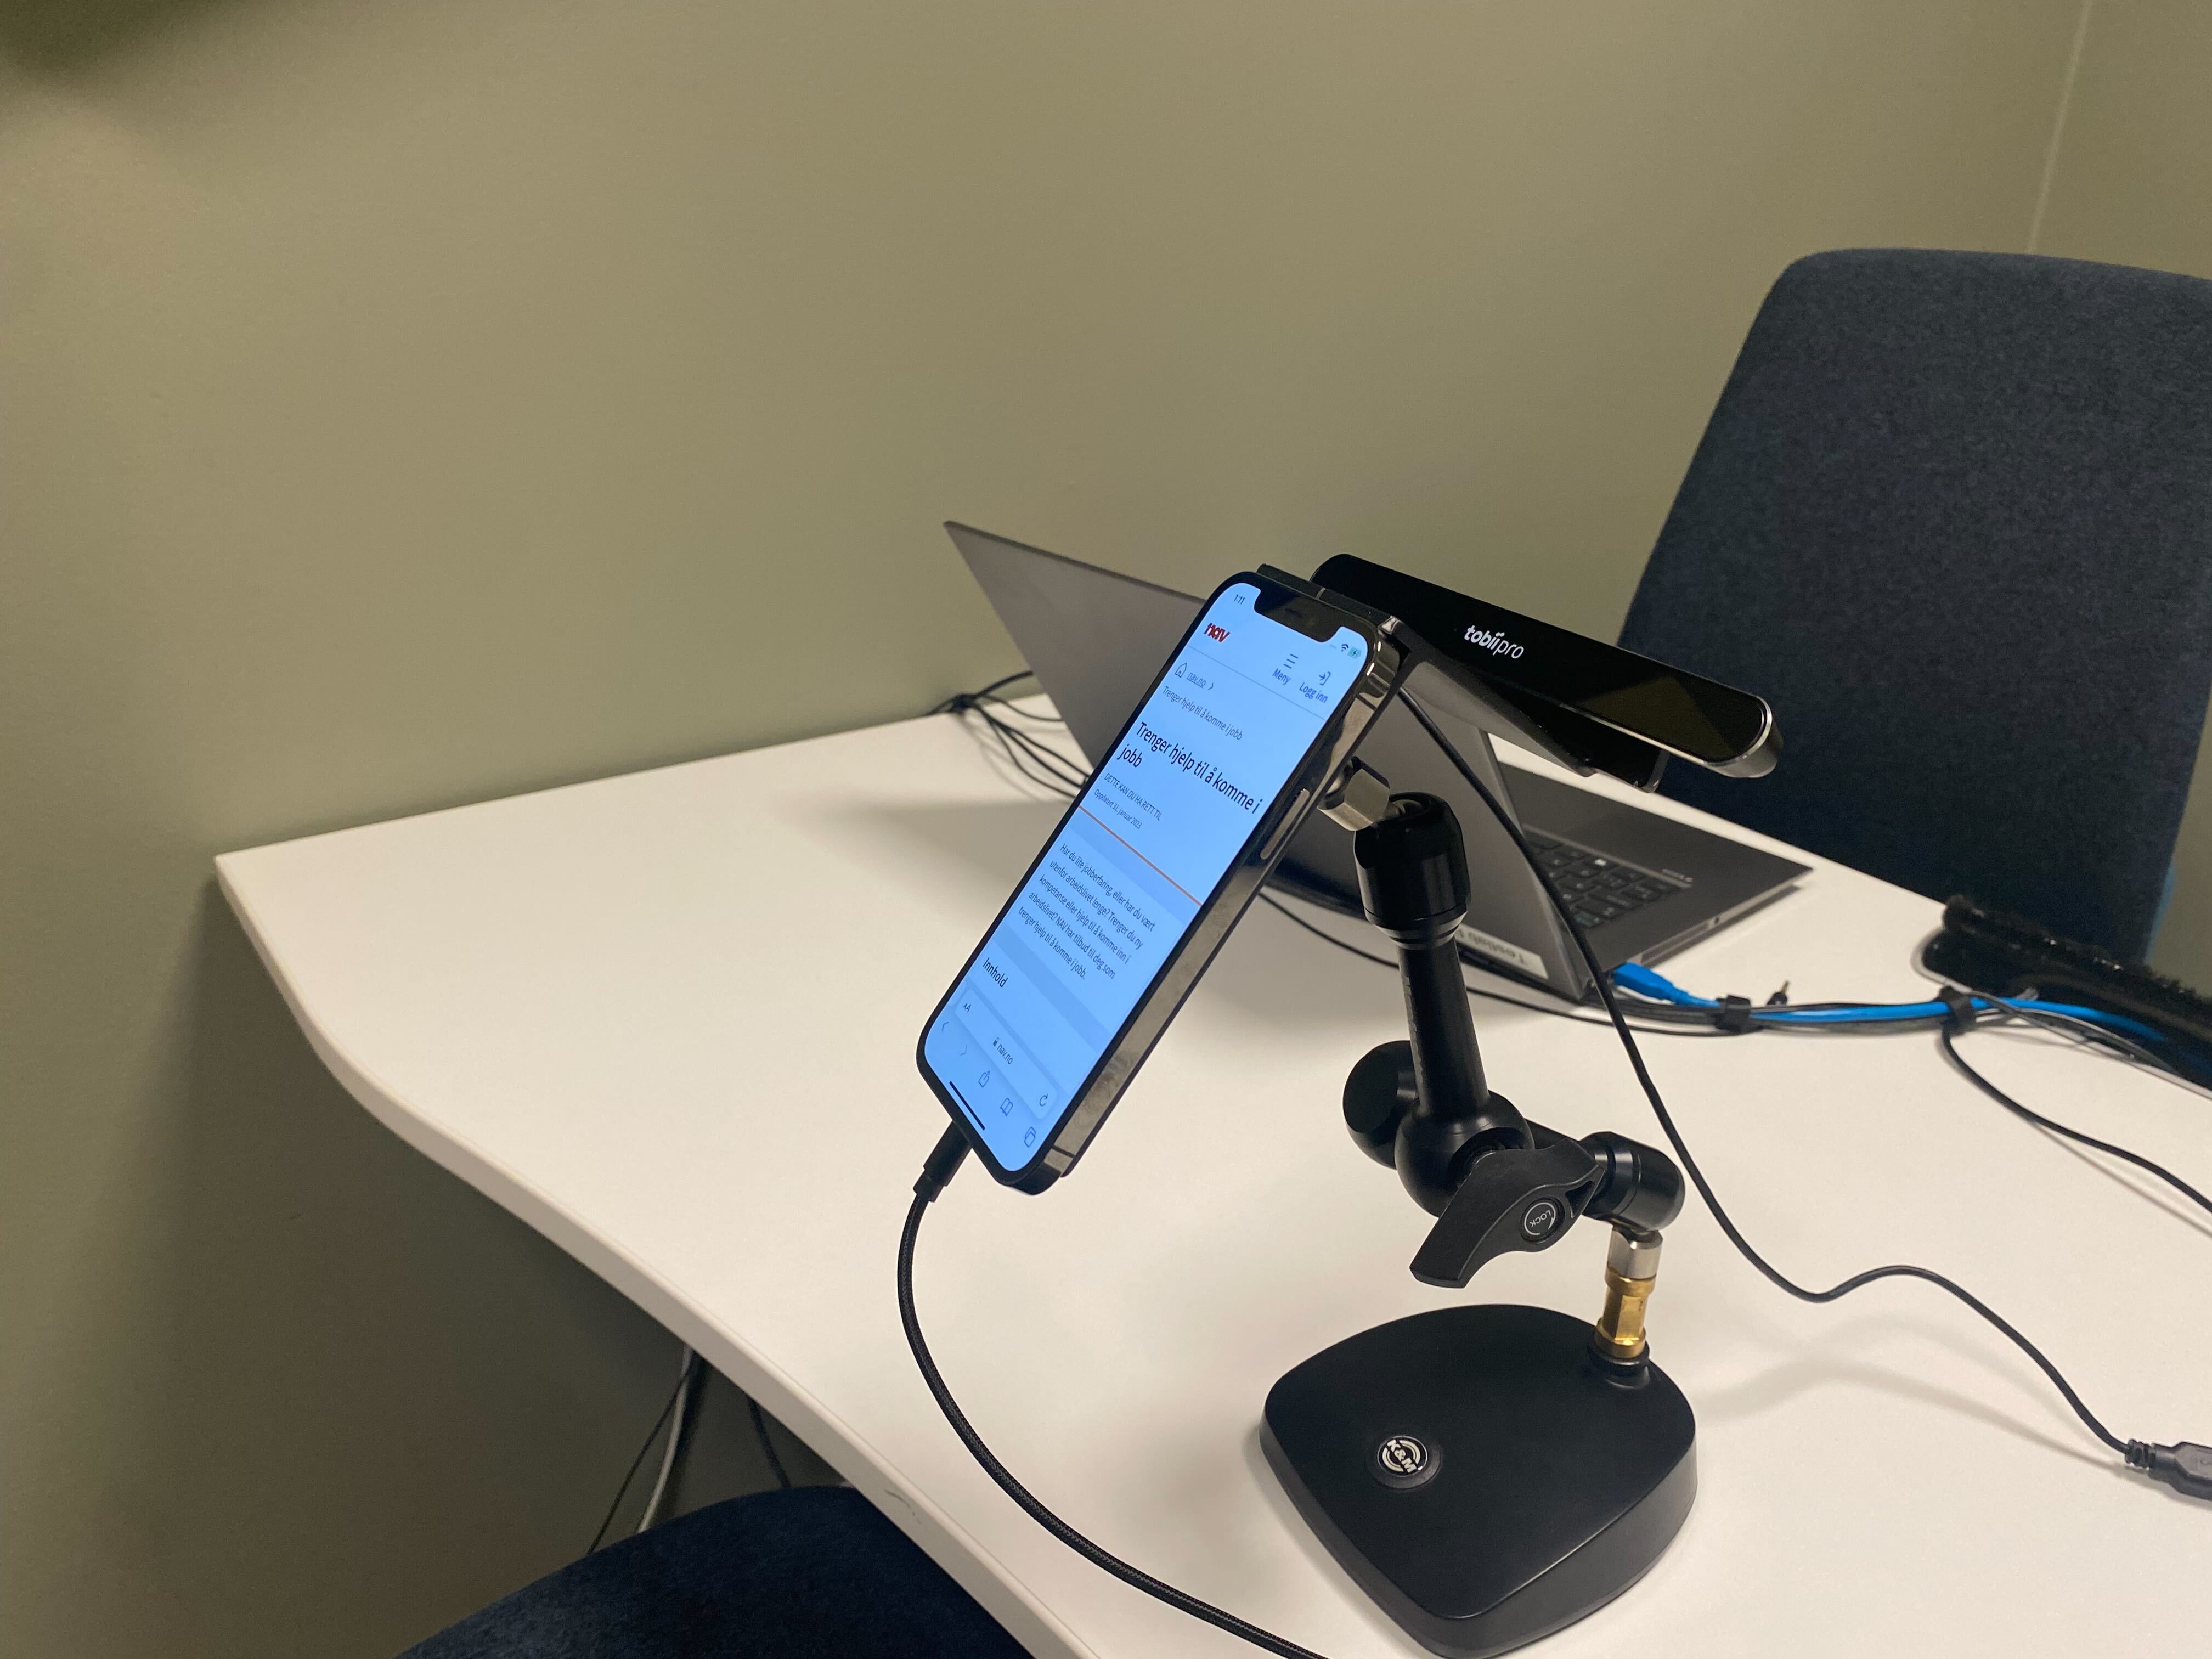 Bilde fra rom nummer to av utstyr for brukertester med blikksporing på smarttelefoner og nettbrett.